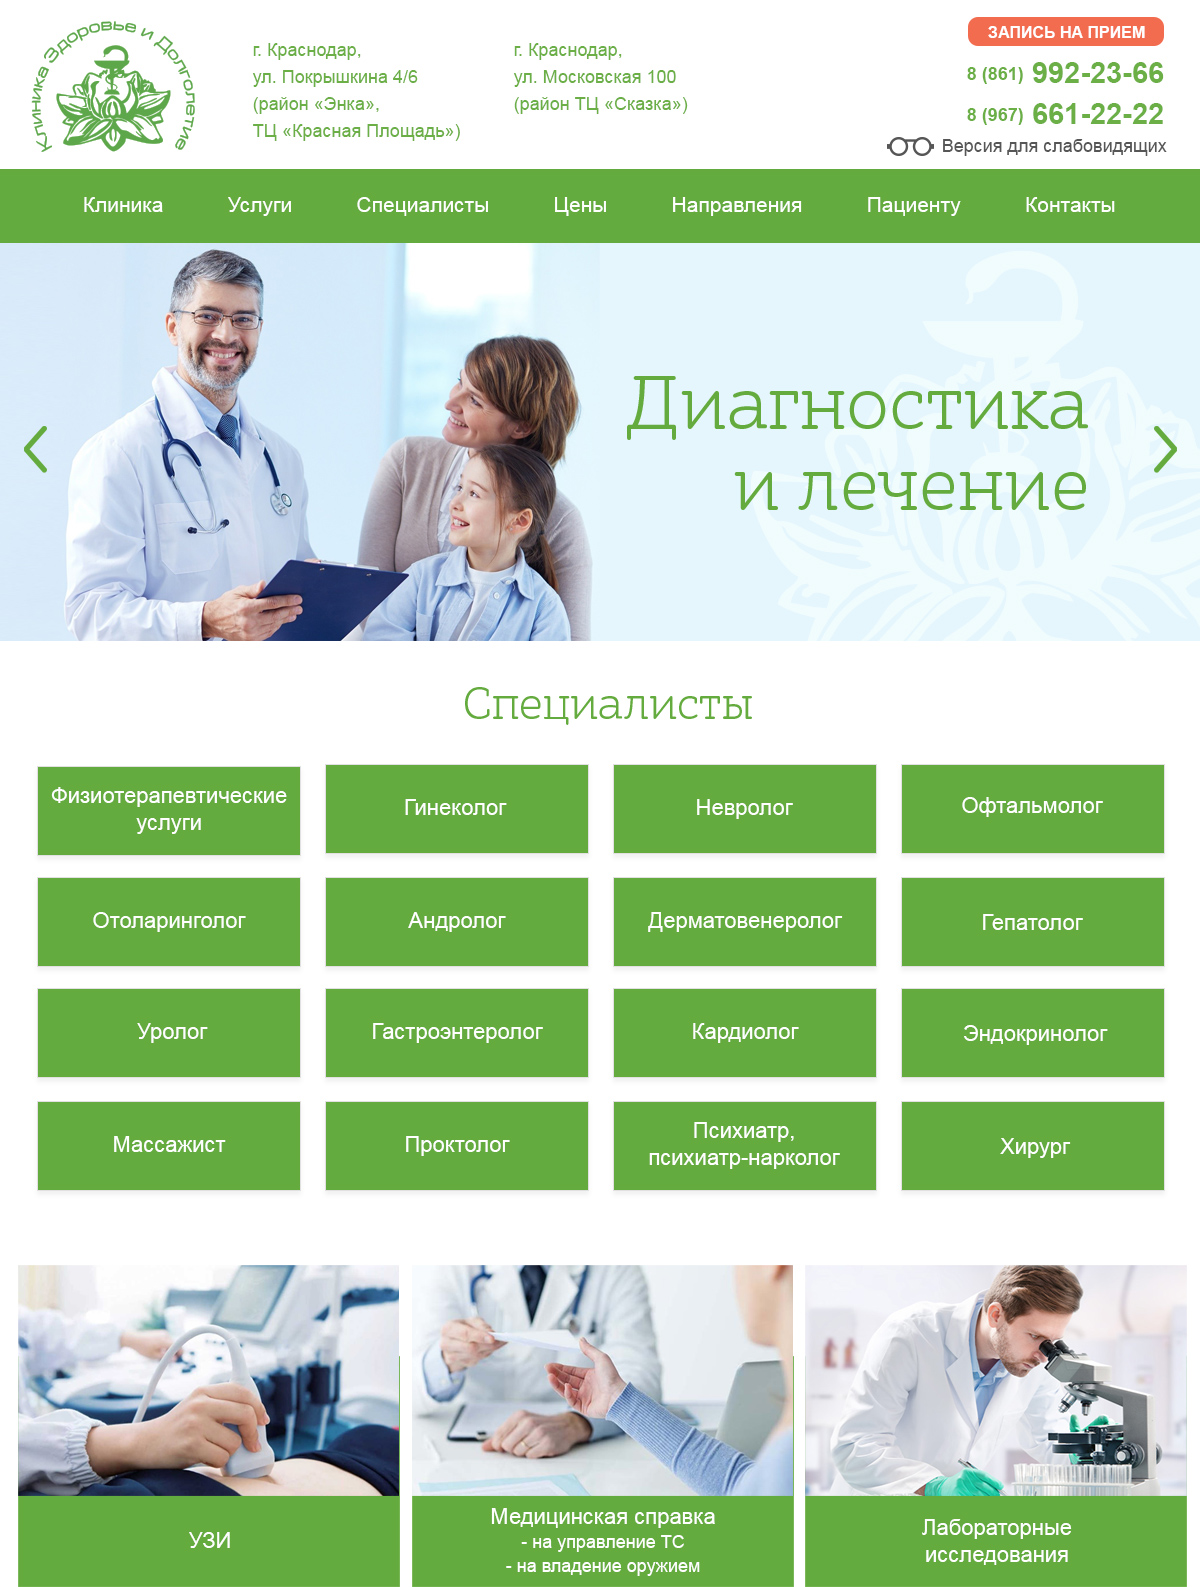 Создание сайта для медицинского центра «Долголетие и здоровье» г. Краснодар